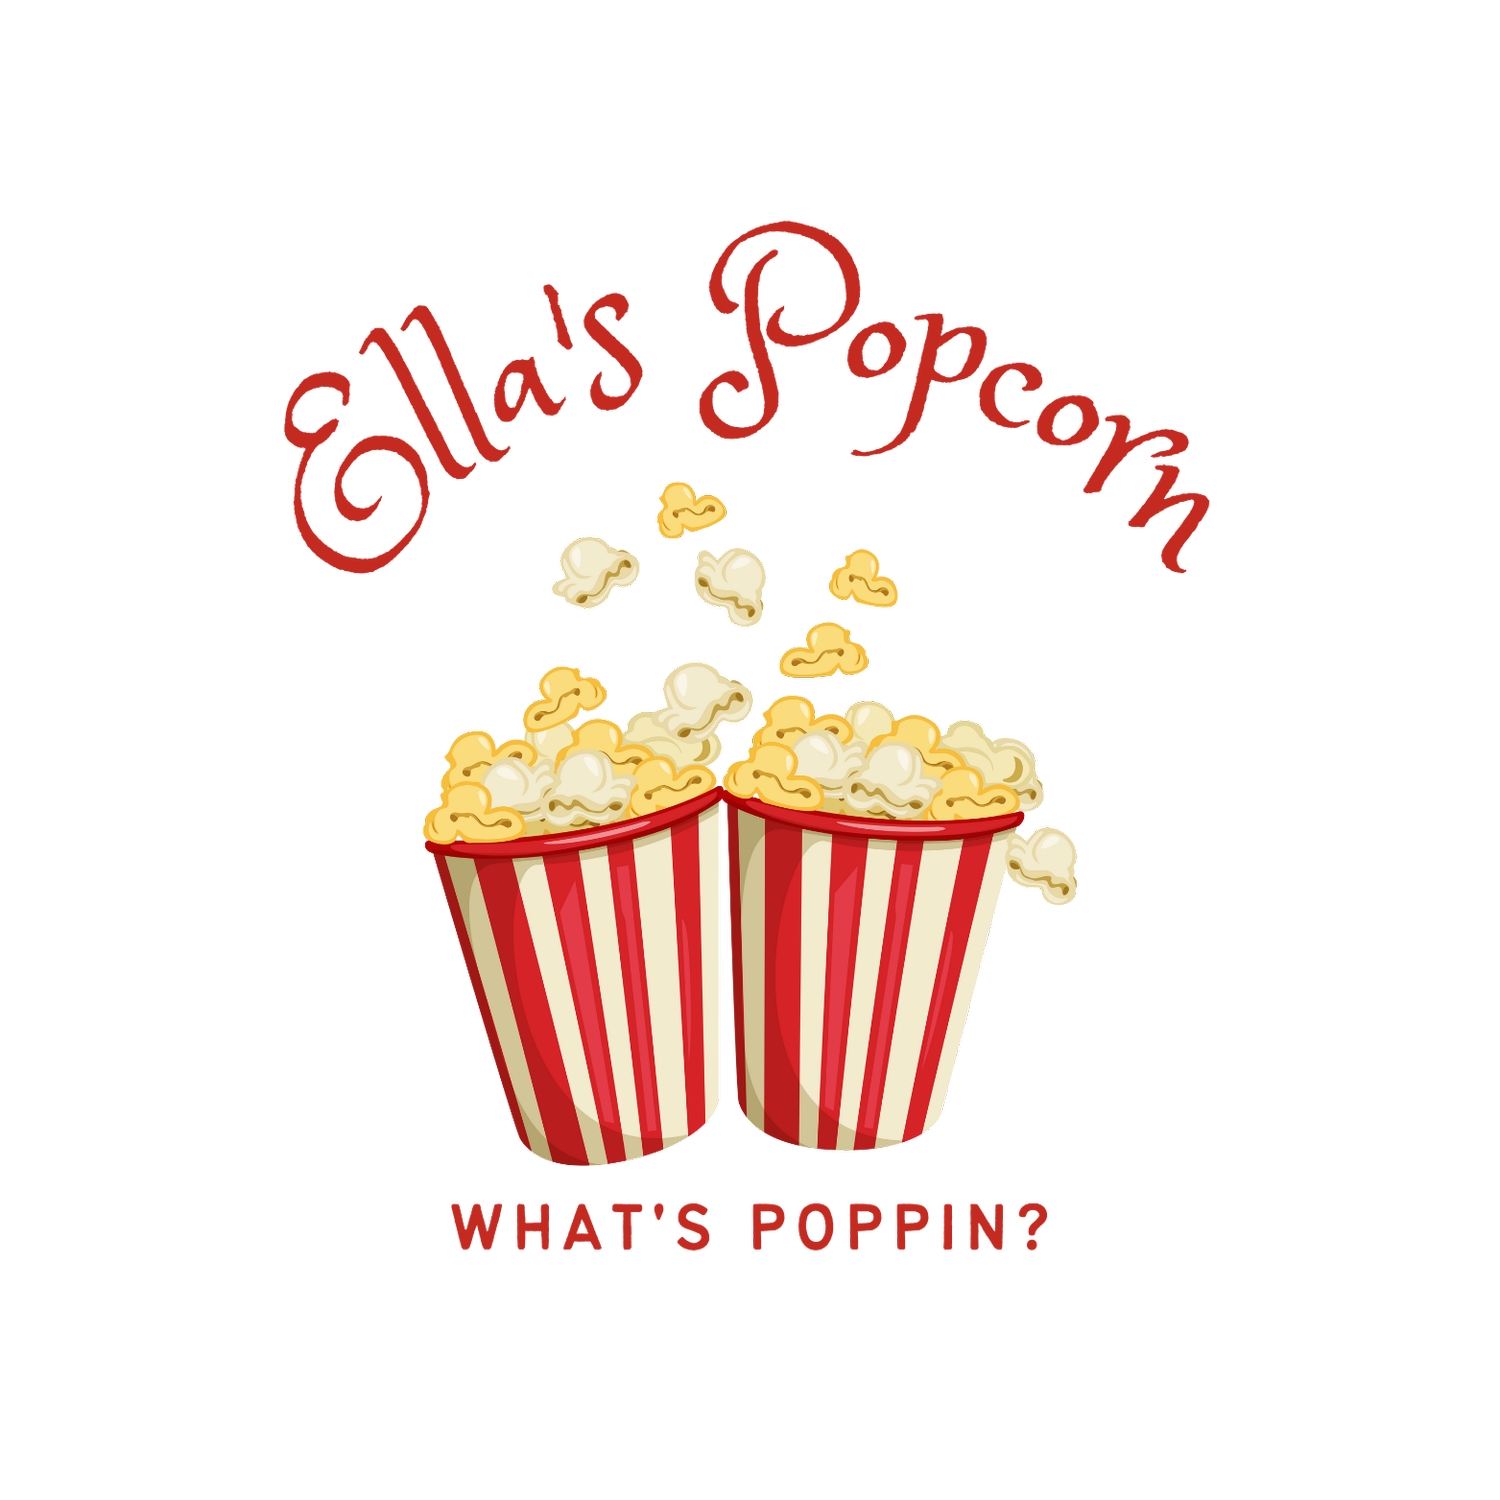 Ellas Popcorn